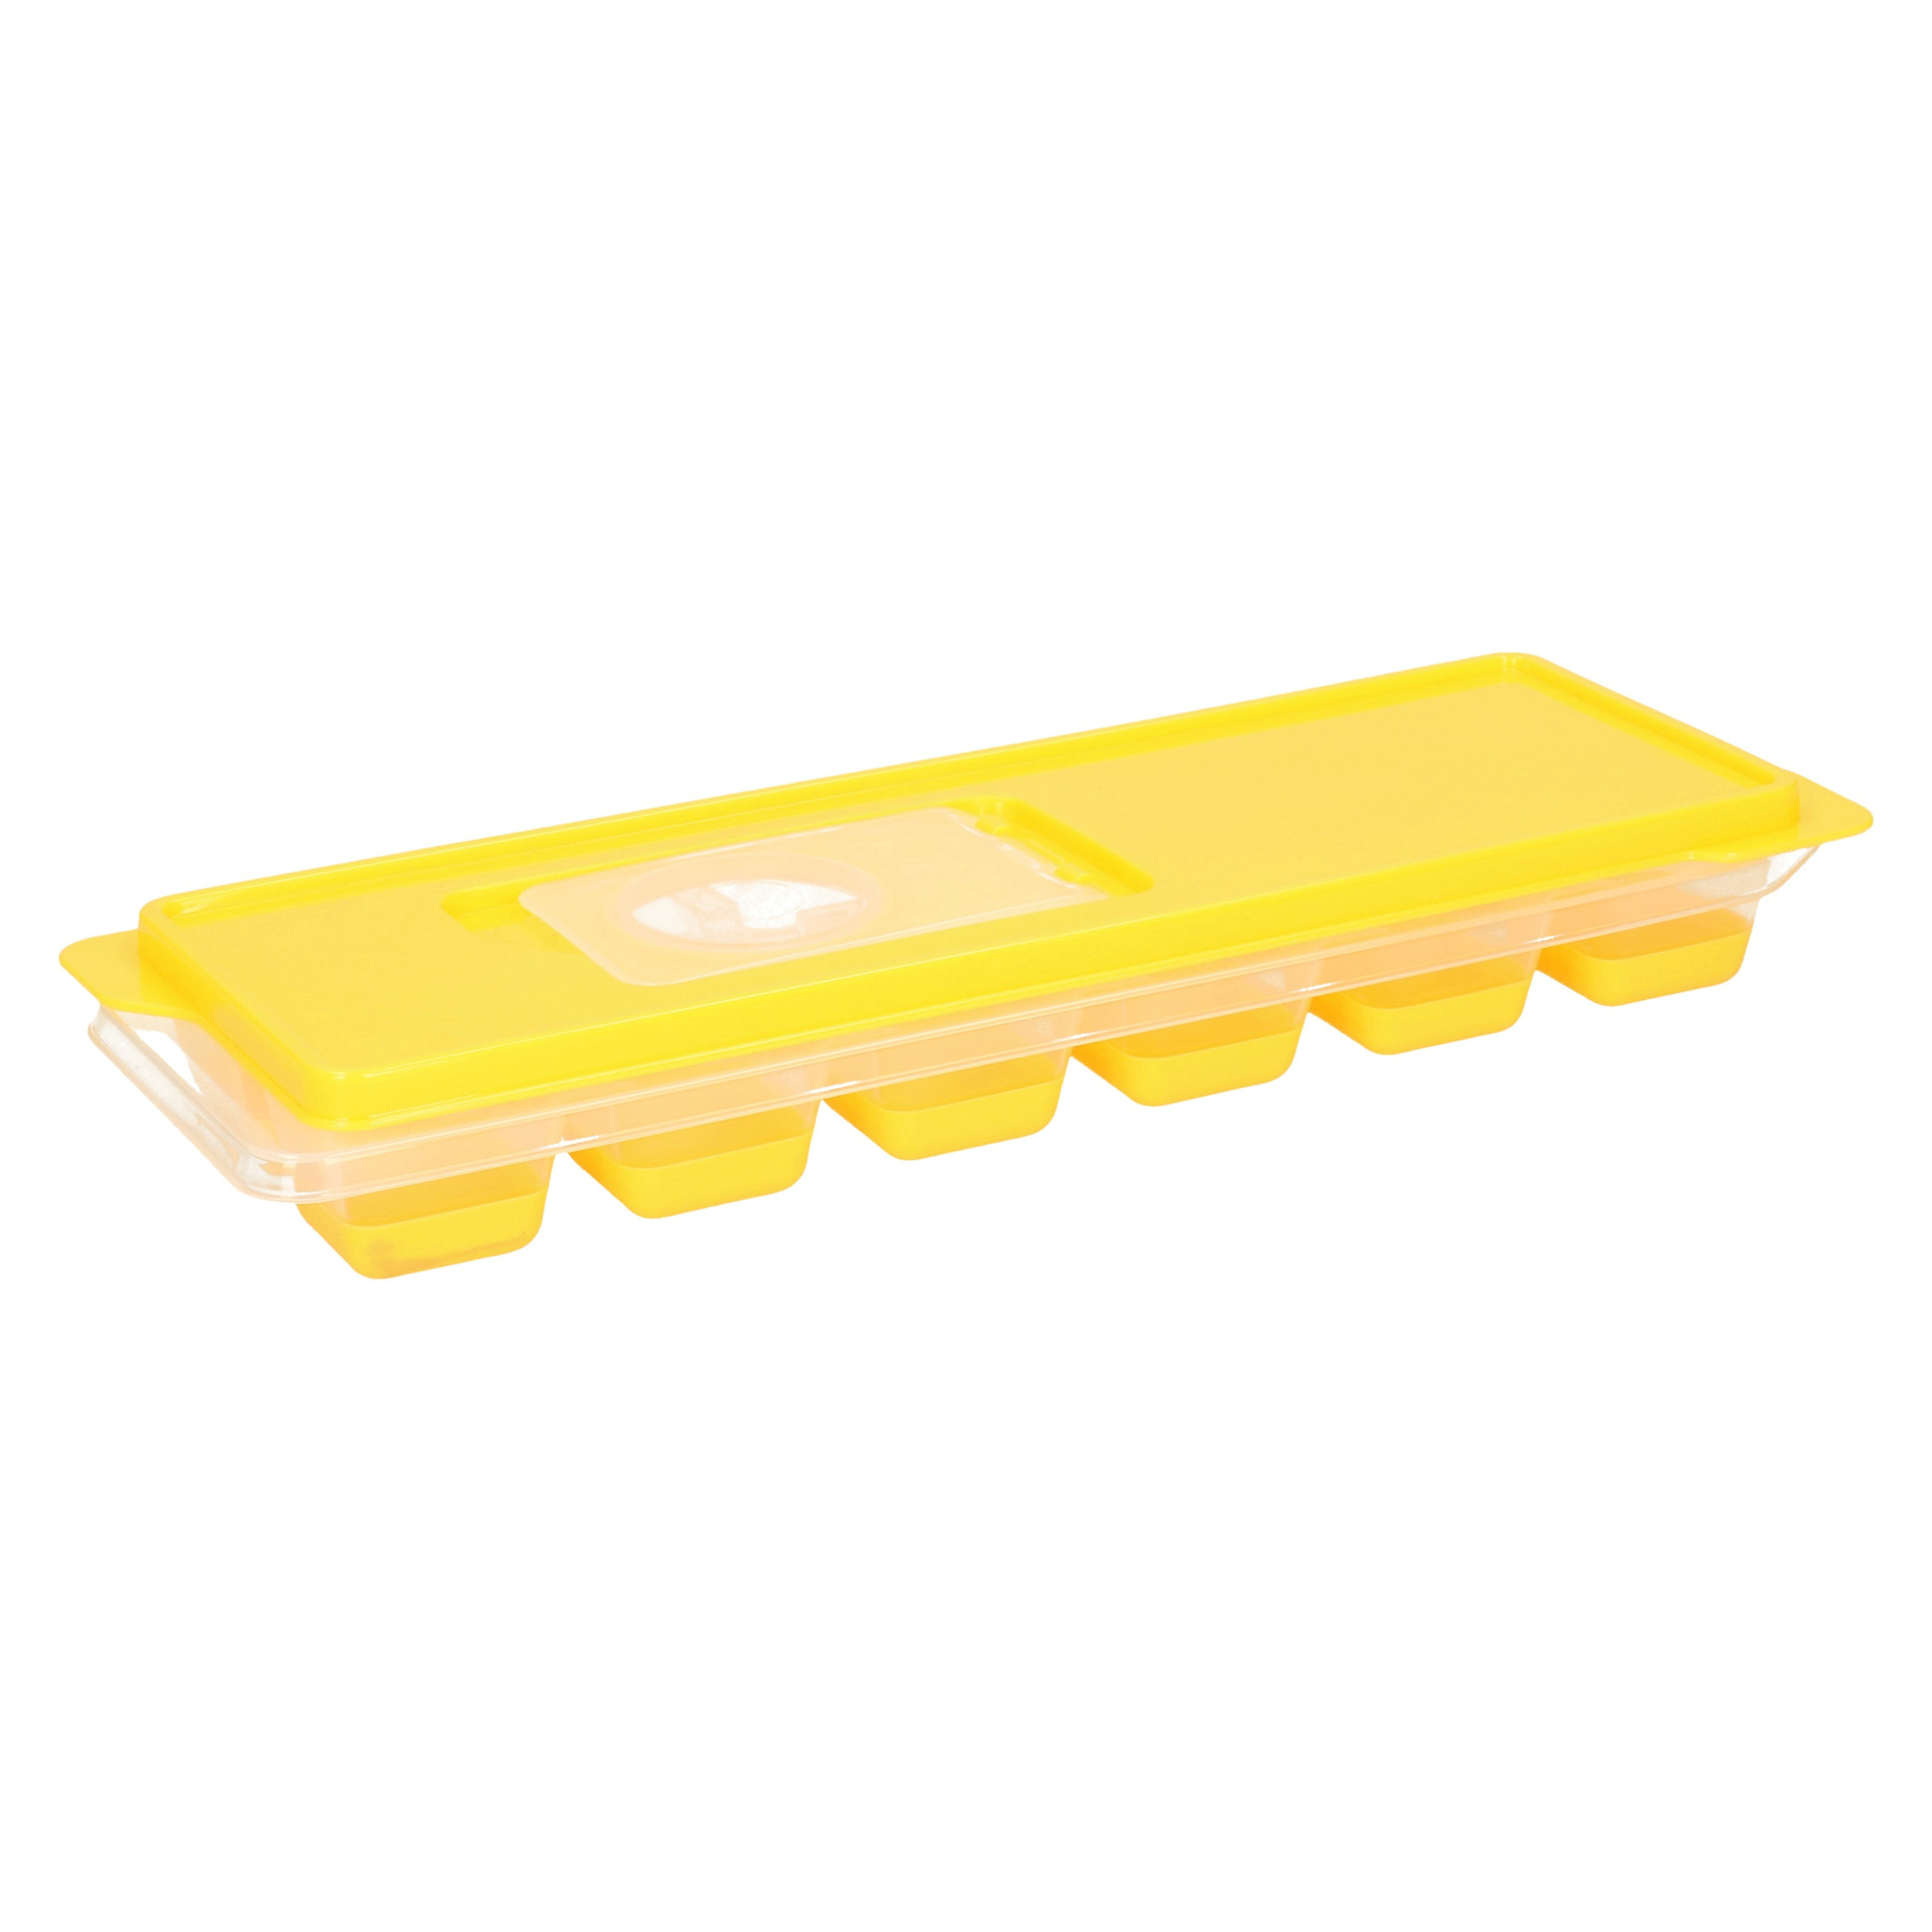 Tray met ijsklontjes-ijsblokjes vormpjes 12 vakjes kunststof geel met afsluitdeksel